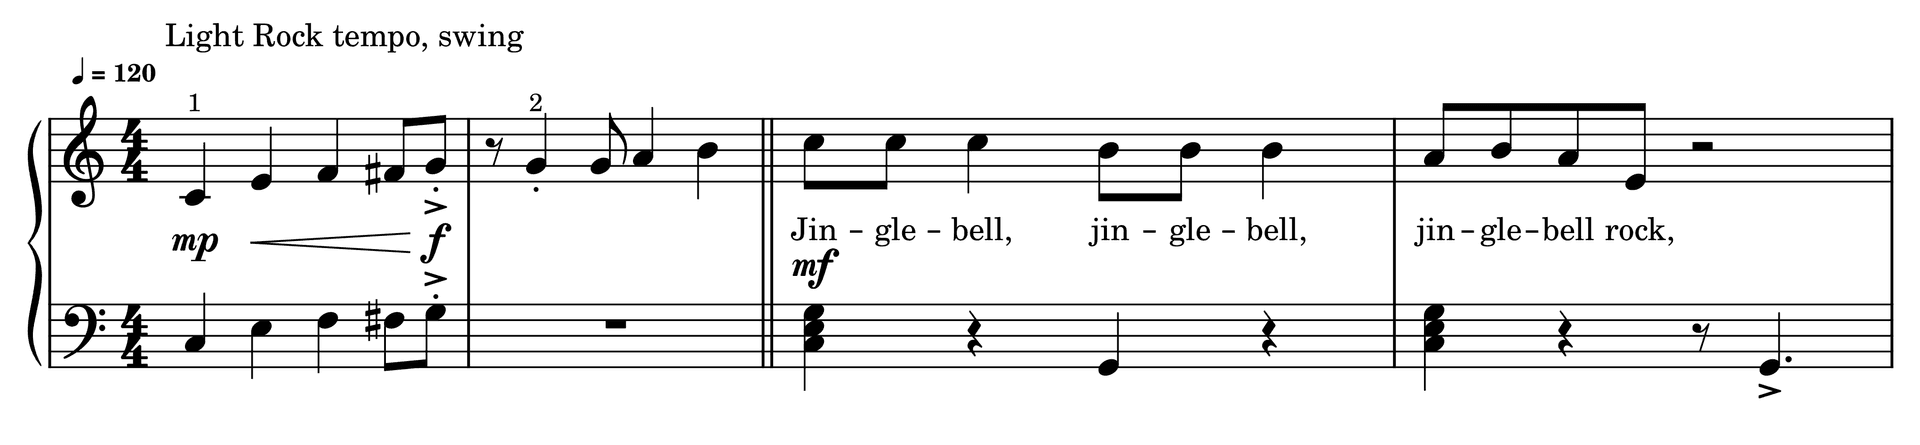 Excerpt of Jingle-Bell Rock